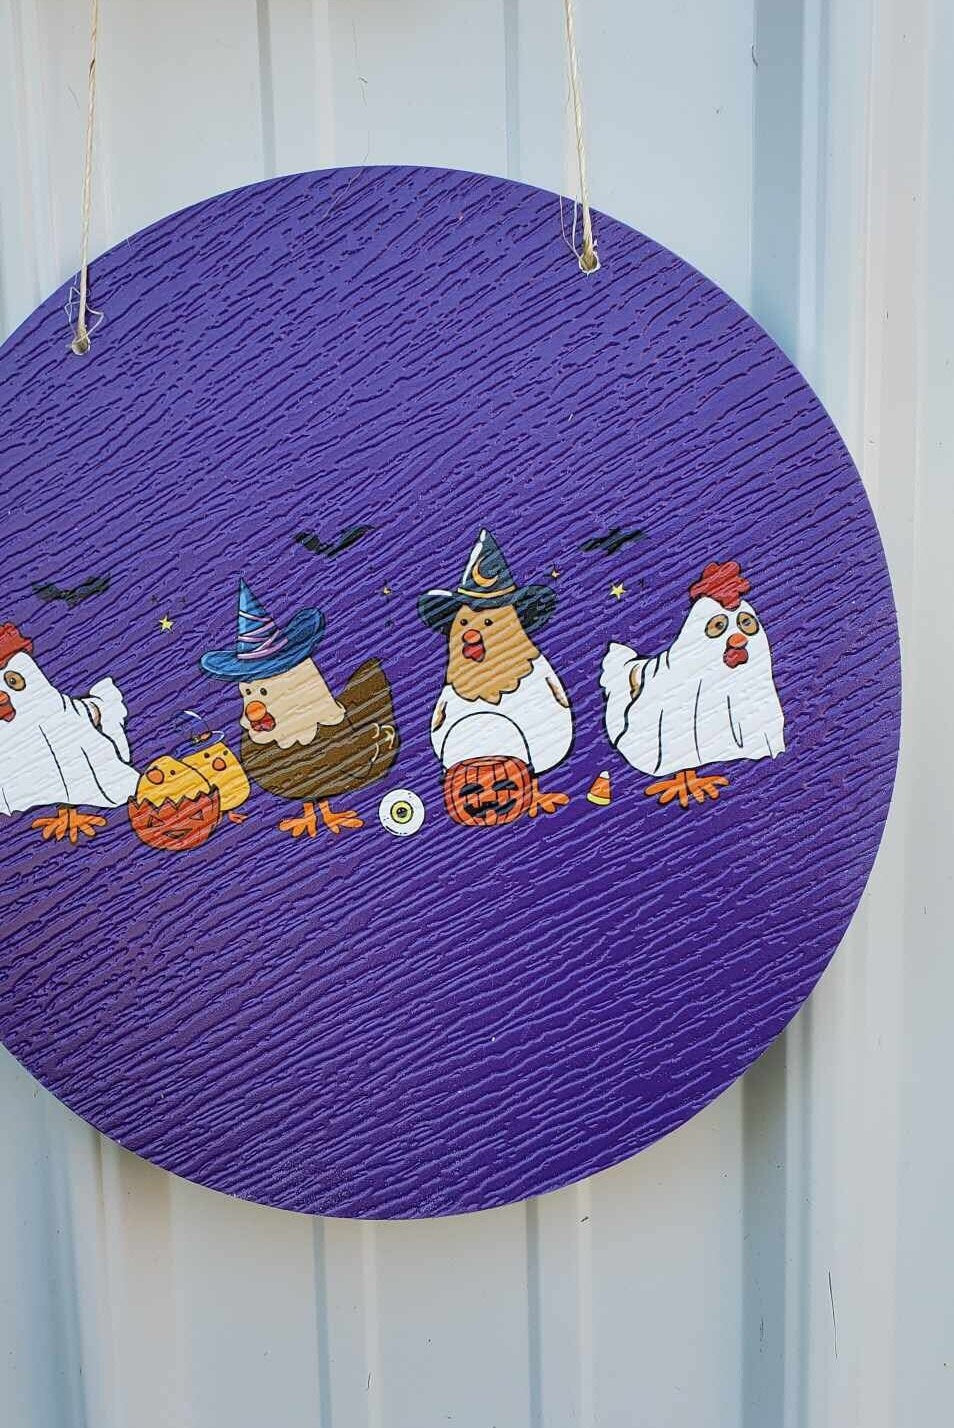 Chicken Hen Dress up Costume Witch Ghost Pumpkin Halloween Trick or Treat PVC Weatherproof Ultraviolet Ink Doorhanger Outdoor Use